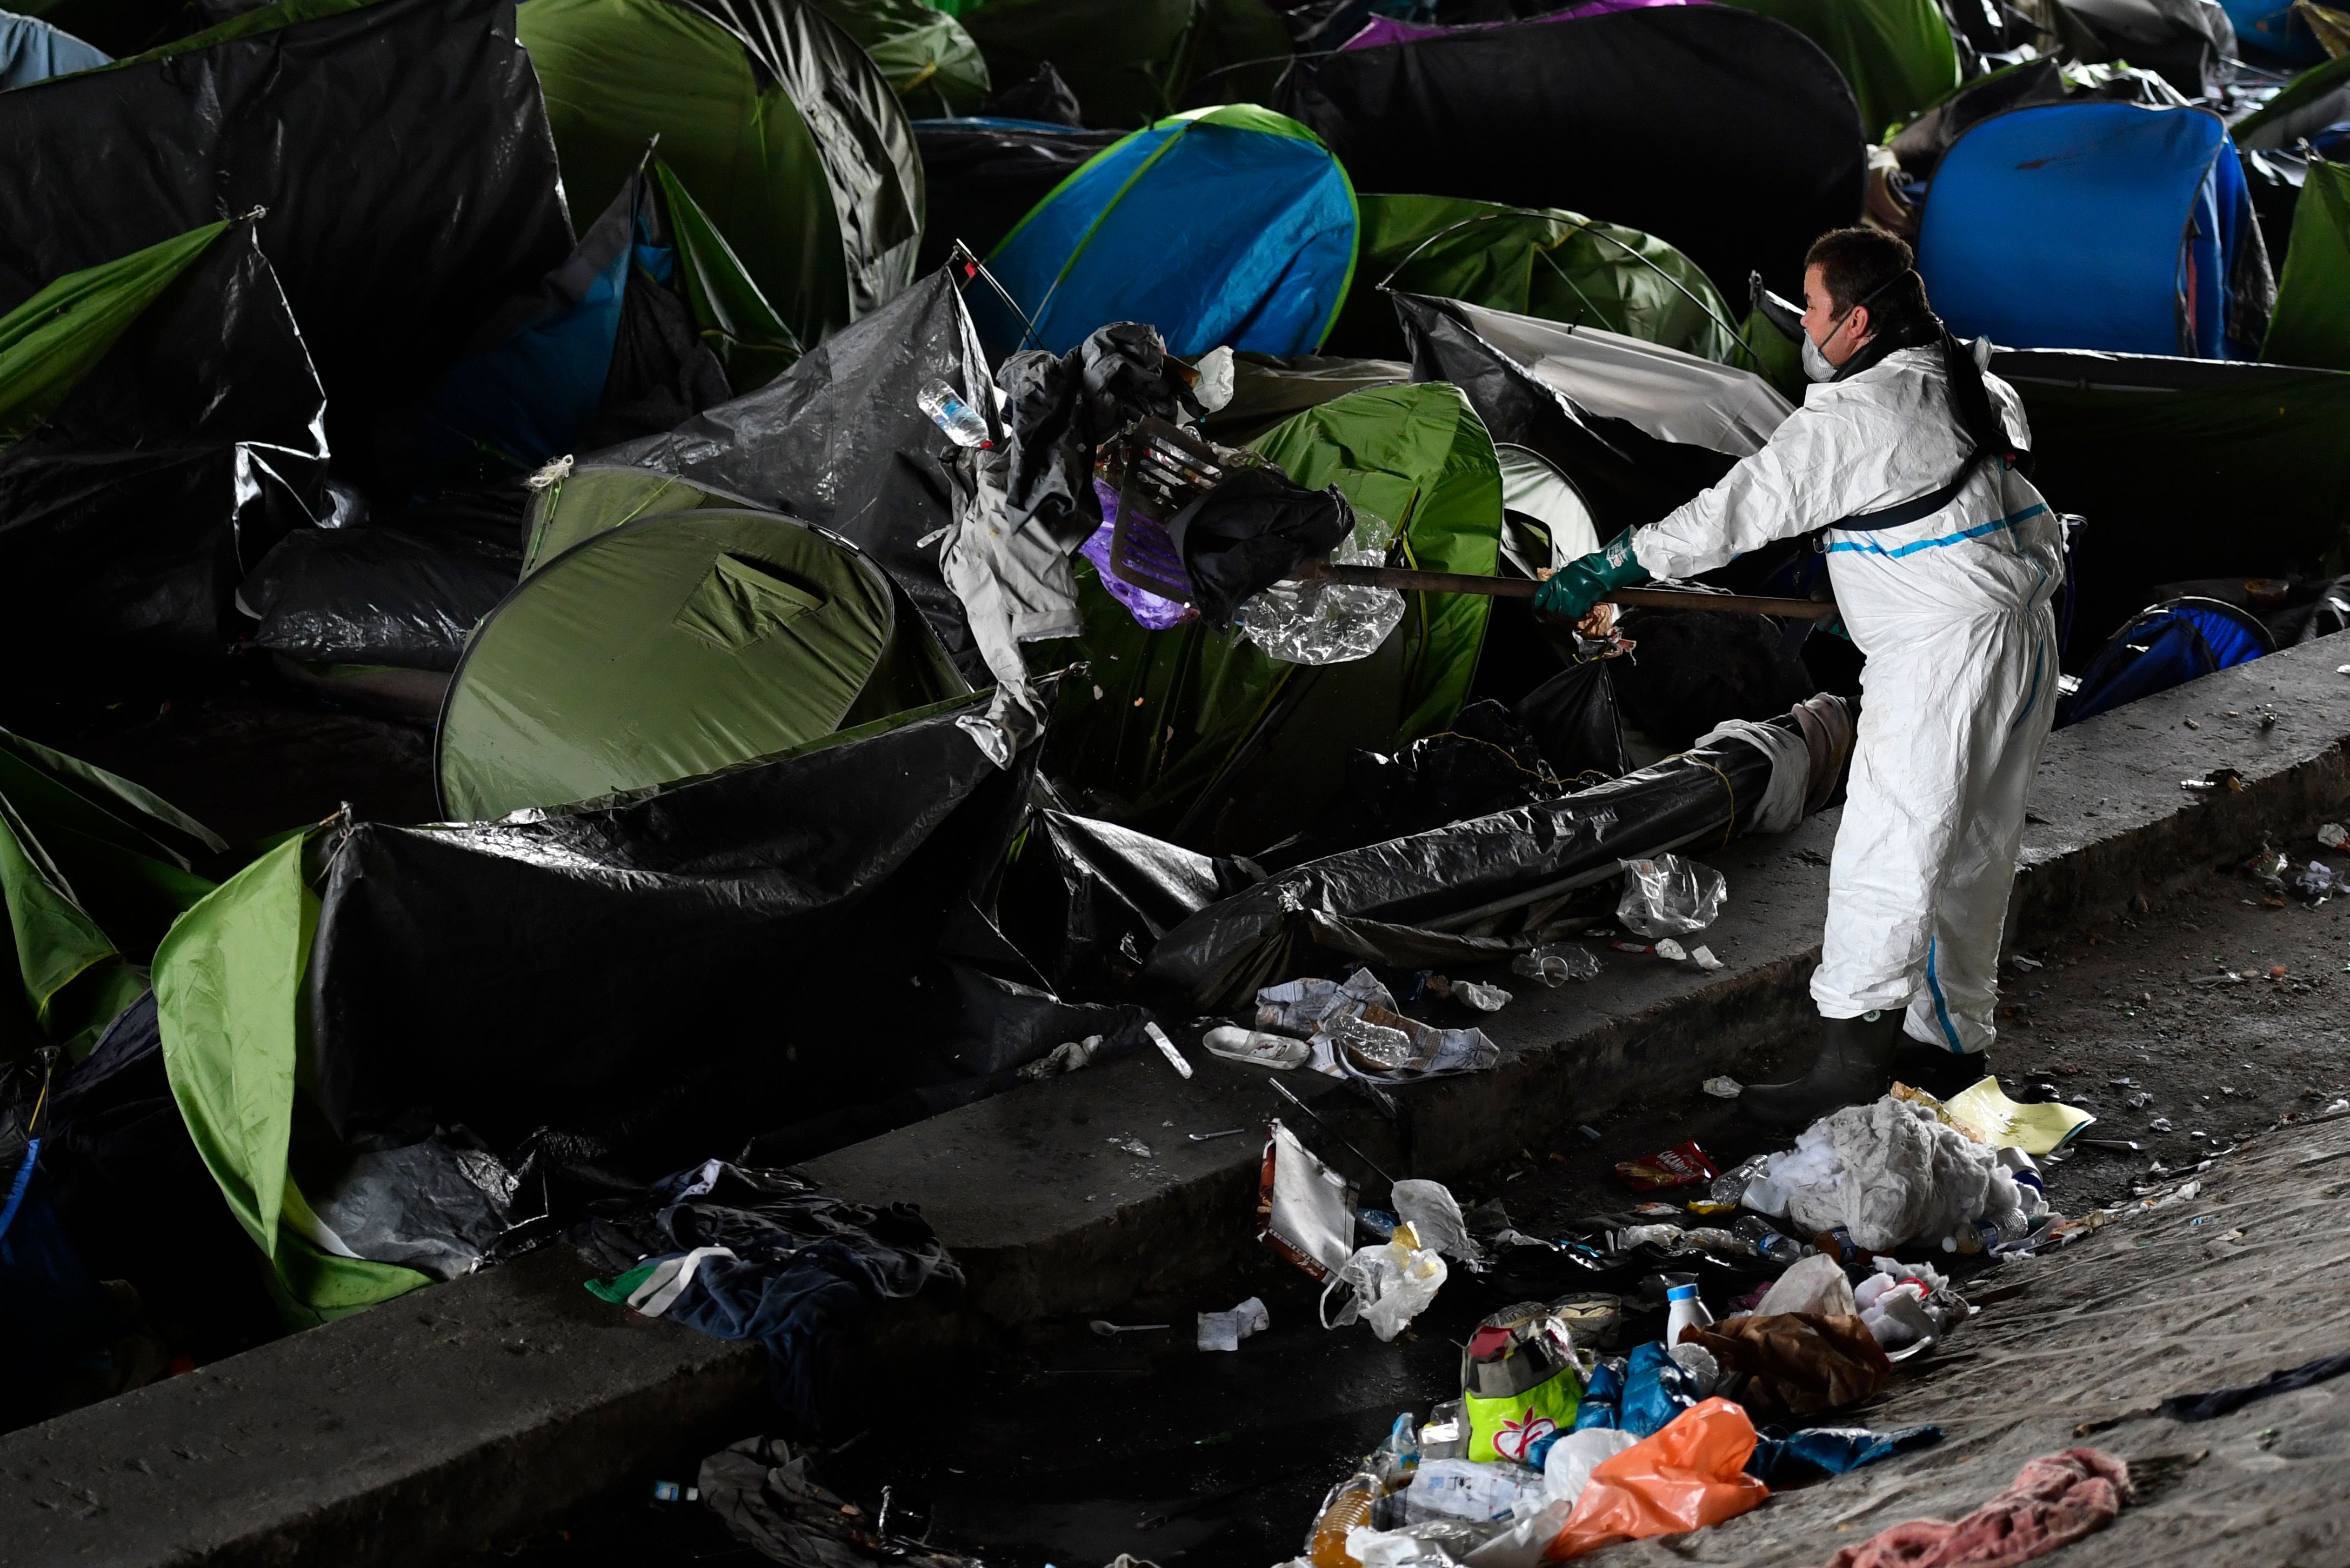 تنظيف واخلاء خيام المهاجرين فى باريس